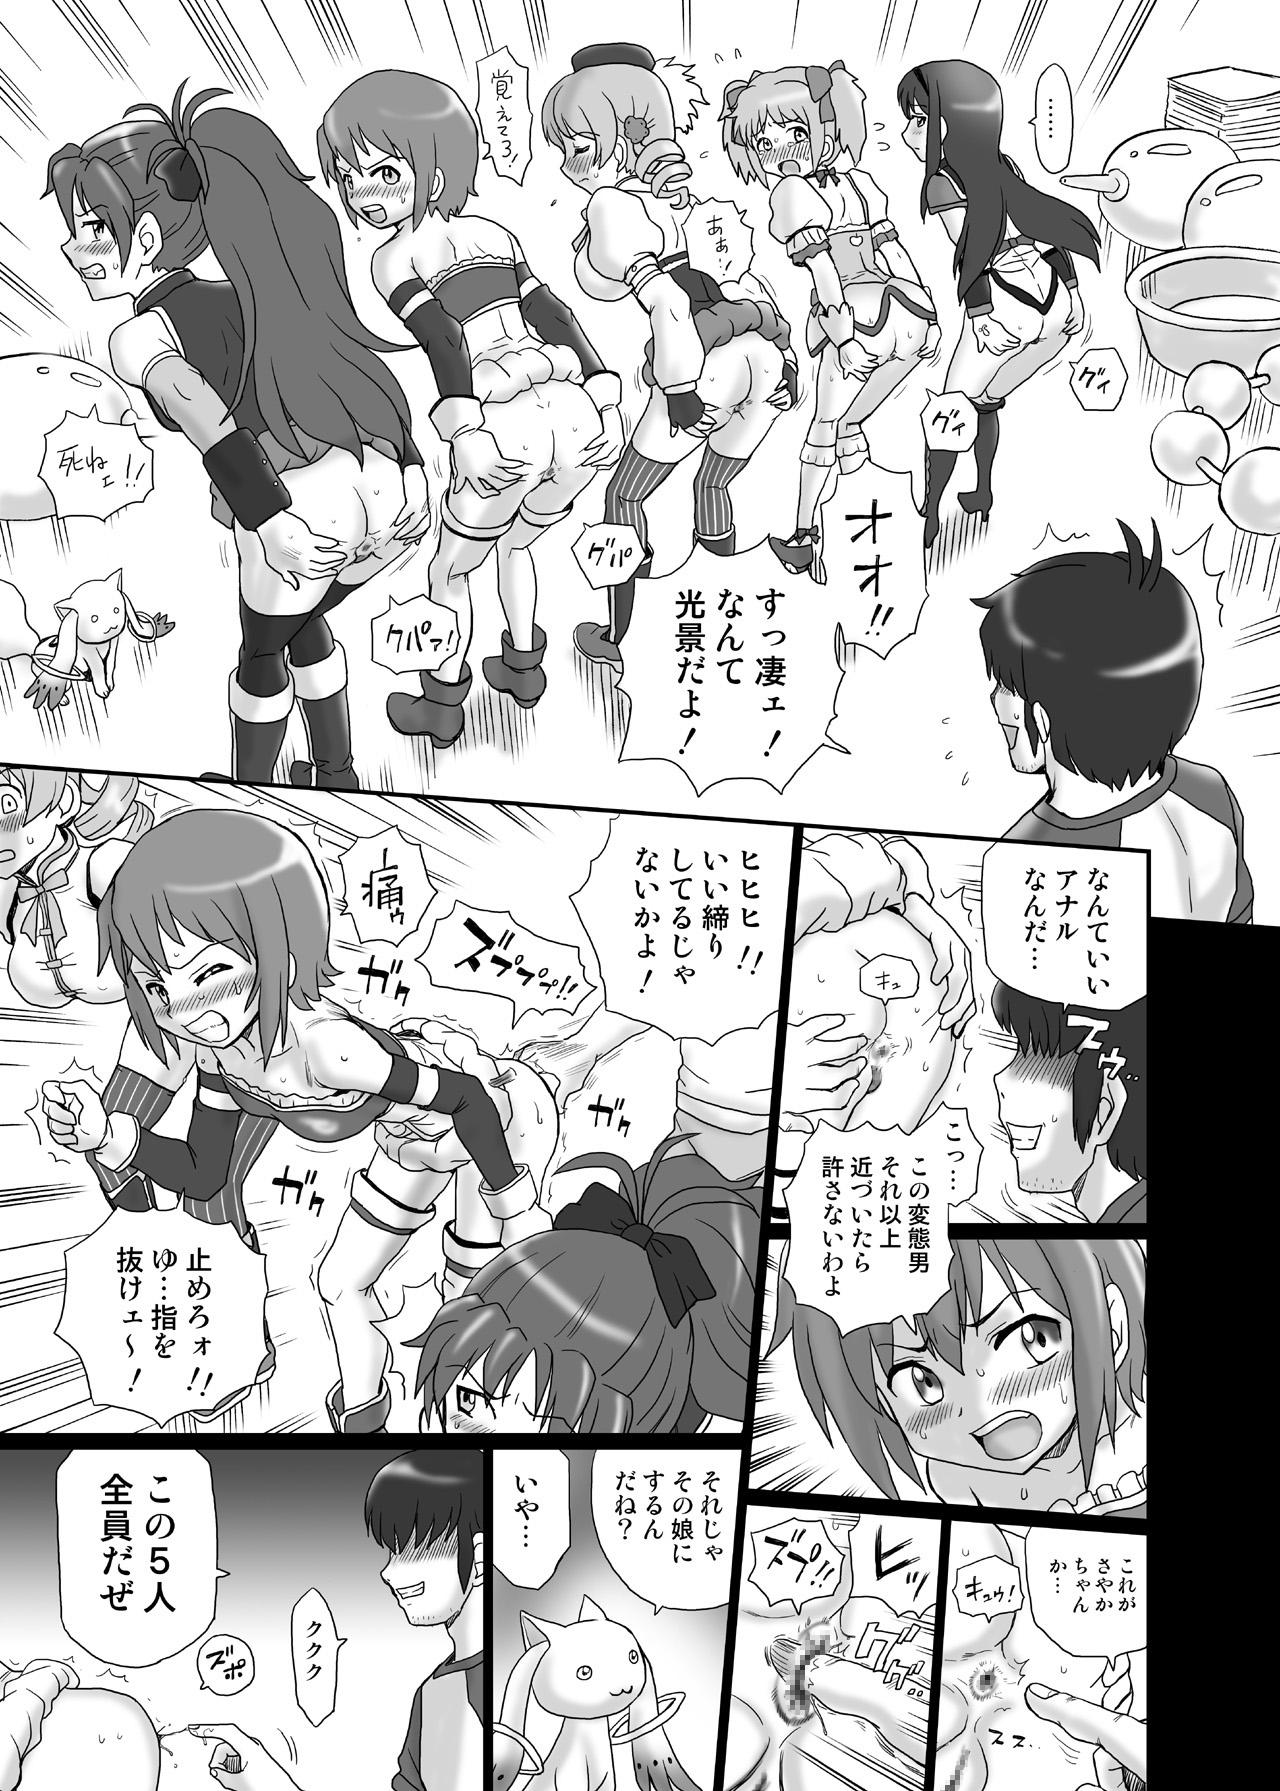 Nudity "Mado★Magi" Anal & Scatolo Sakuhinshuu - Puella magi madoka magica Step Fantasy - Page 6